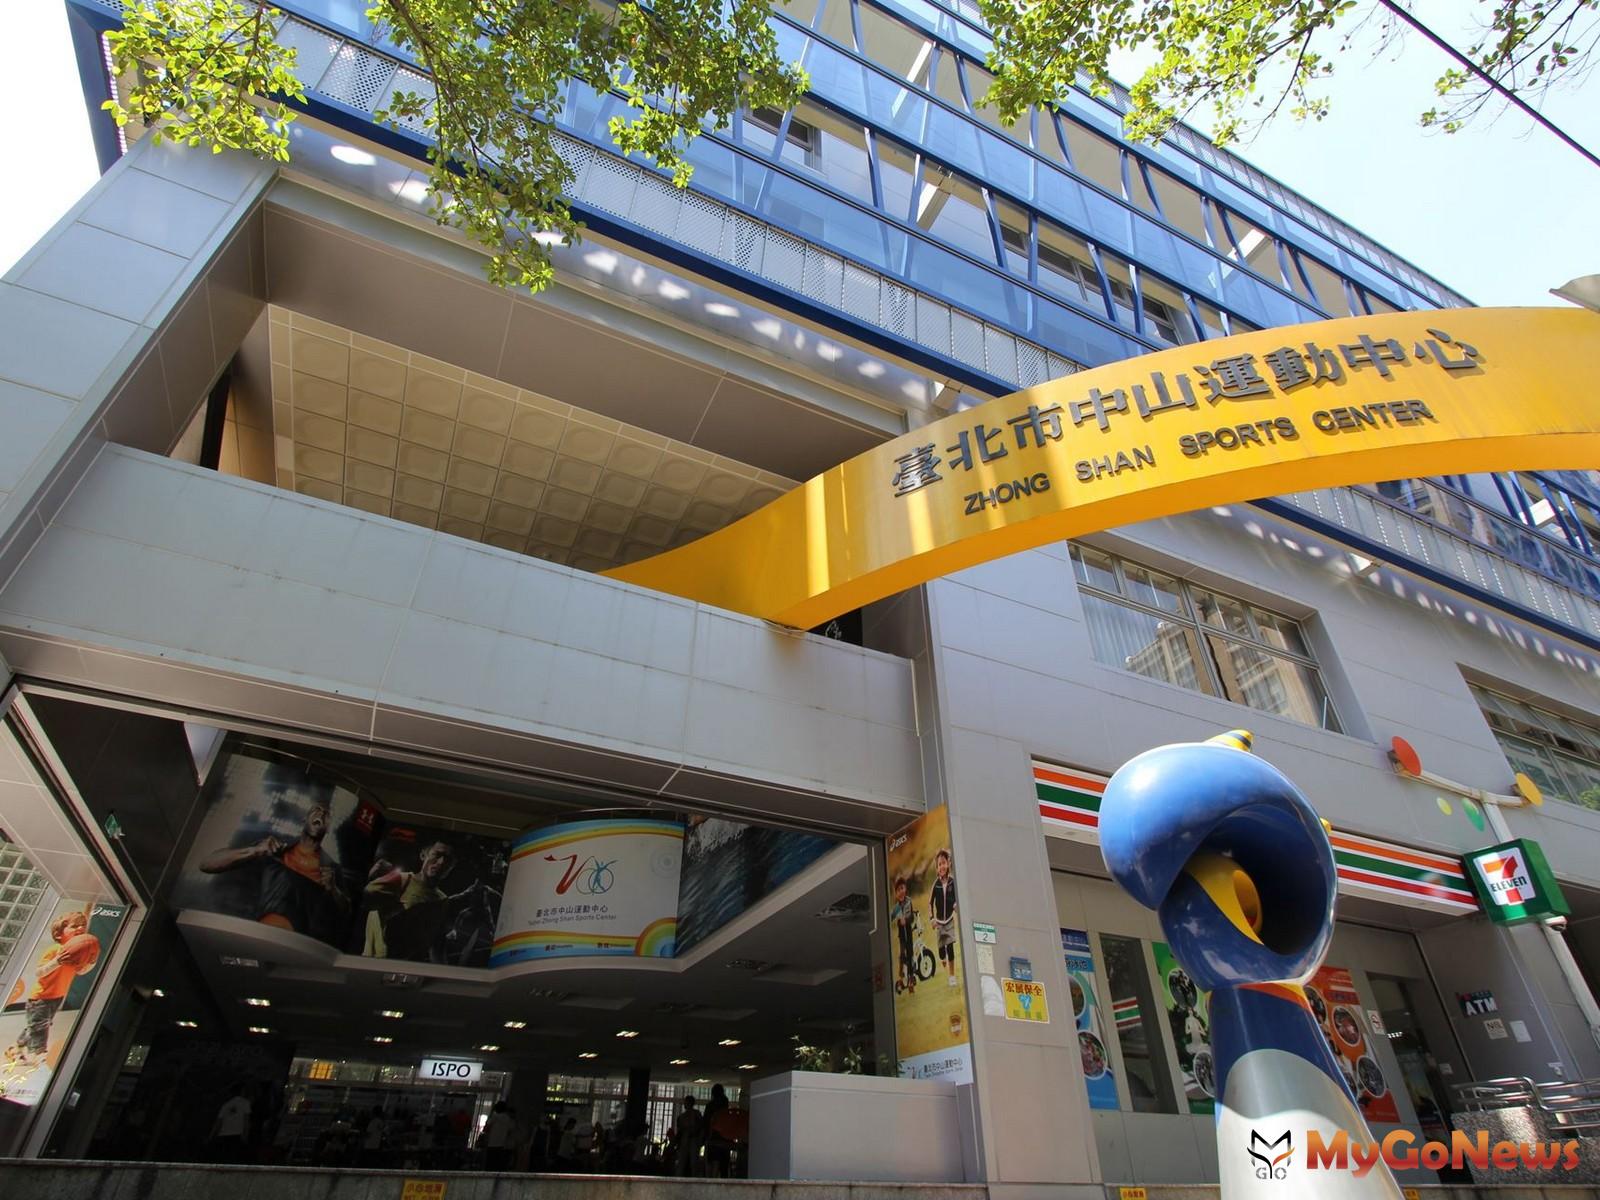  中山運動中心以周遭共計547件的交易量成為台北市最受歡迎的運動宅。(圖/永慶房屋) MyGoNews房地產新聞 市場快訊